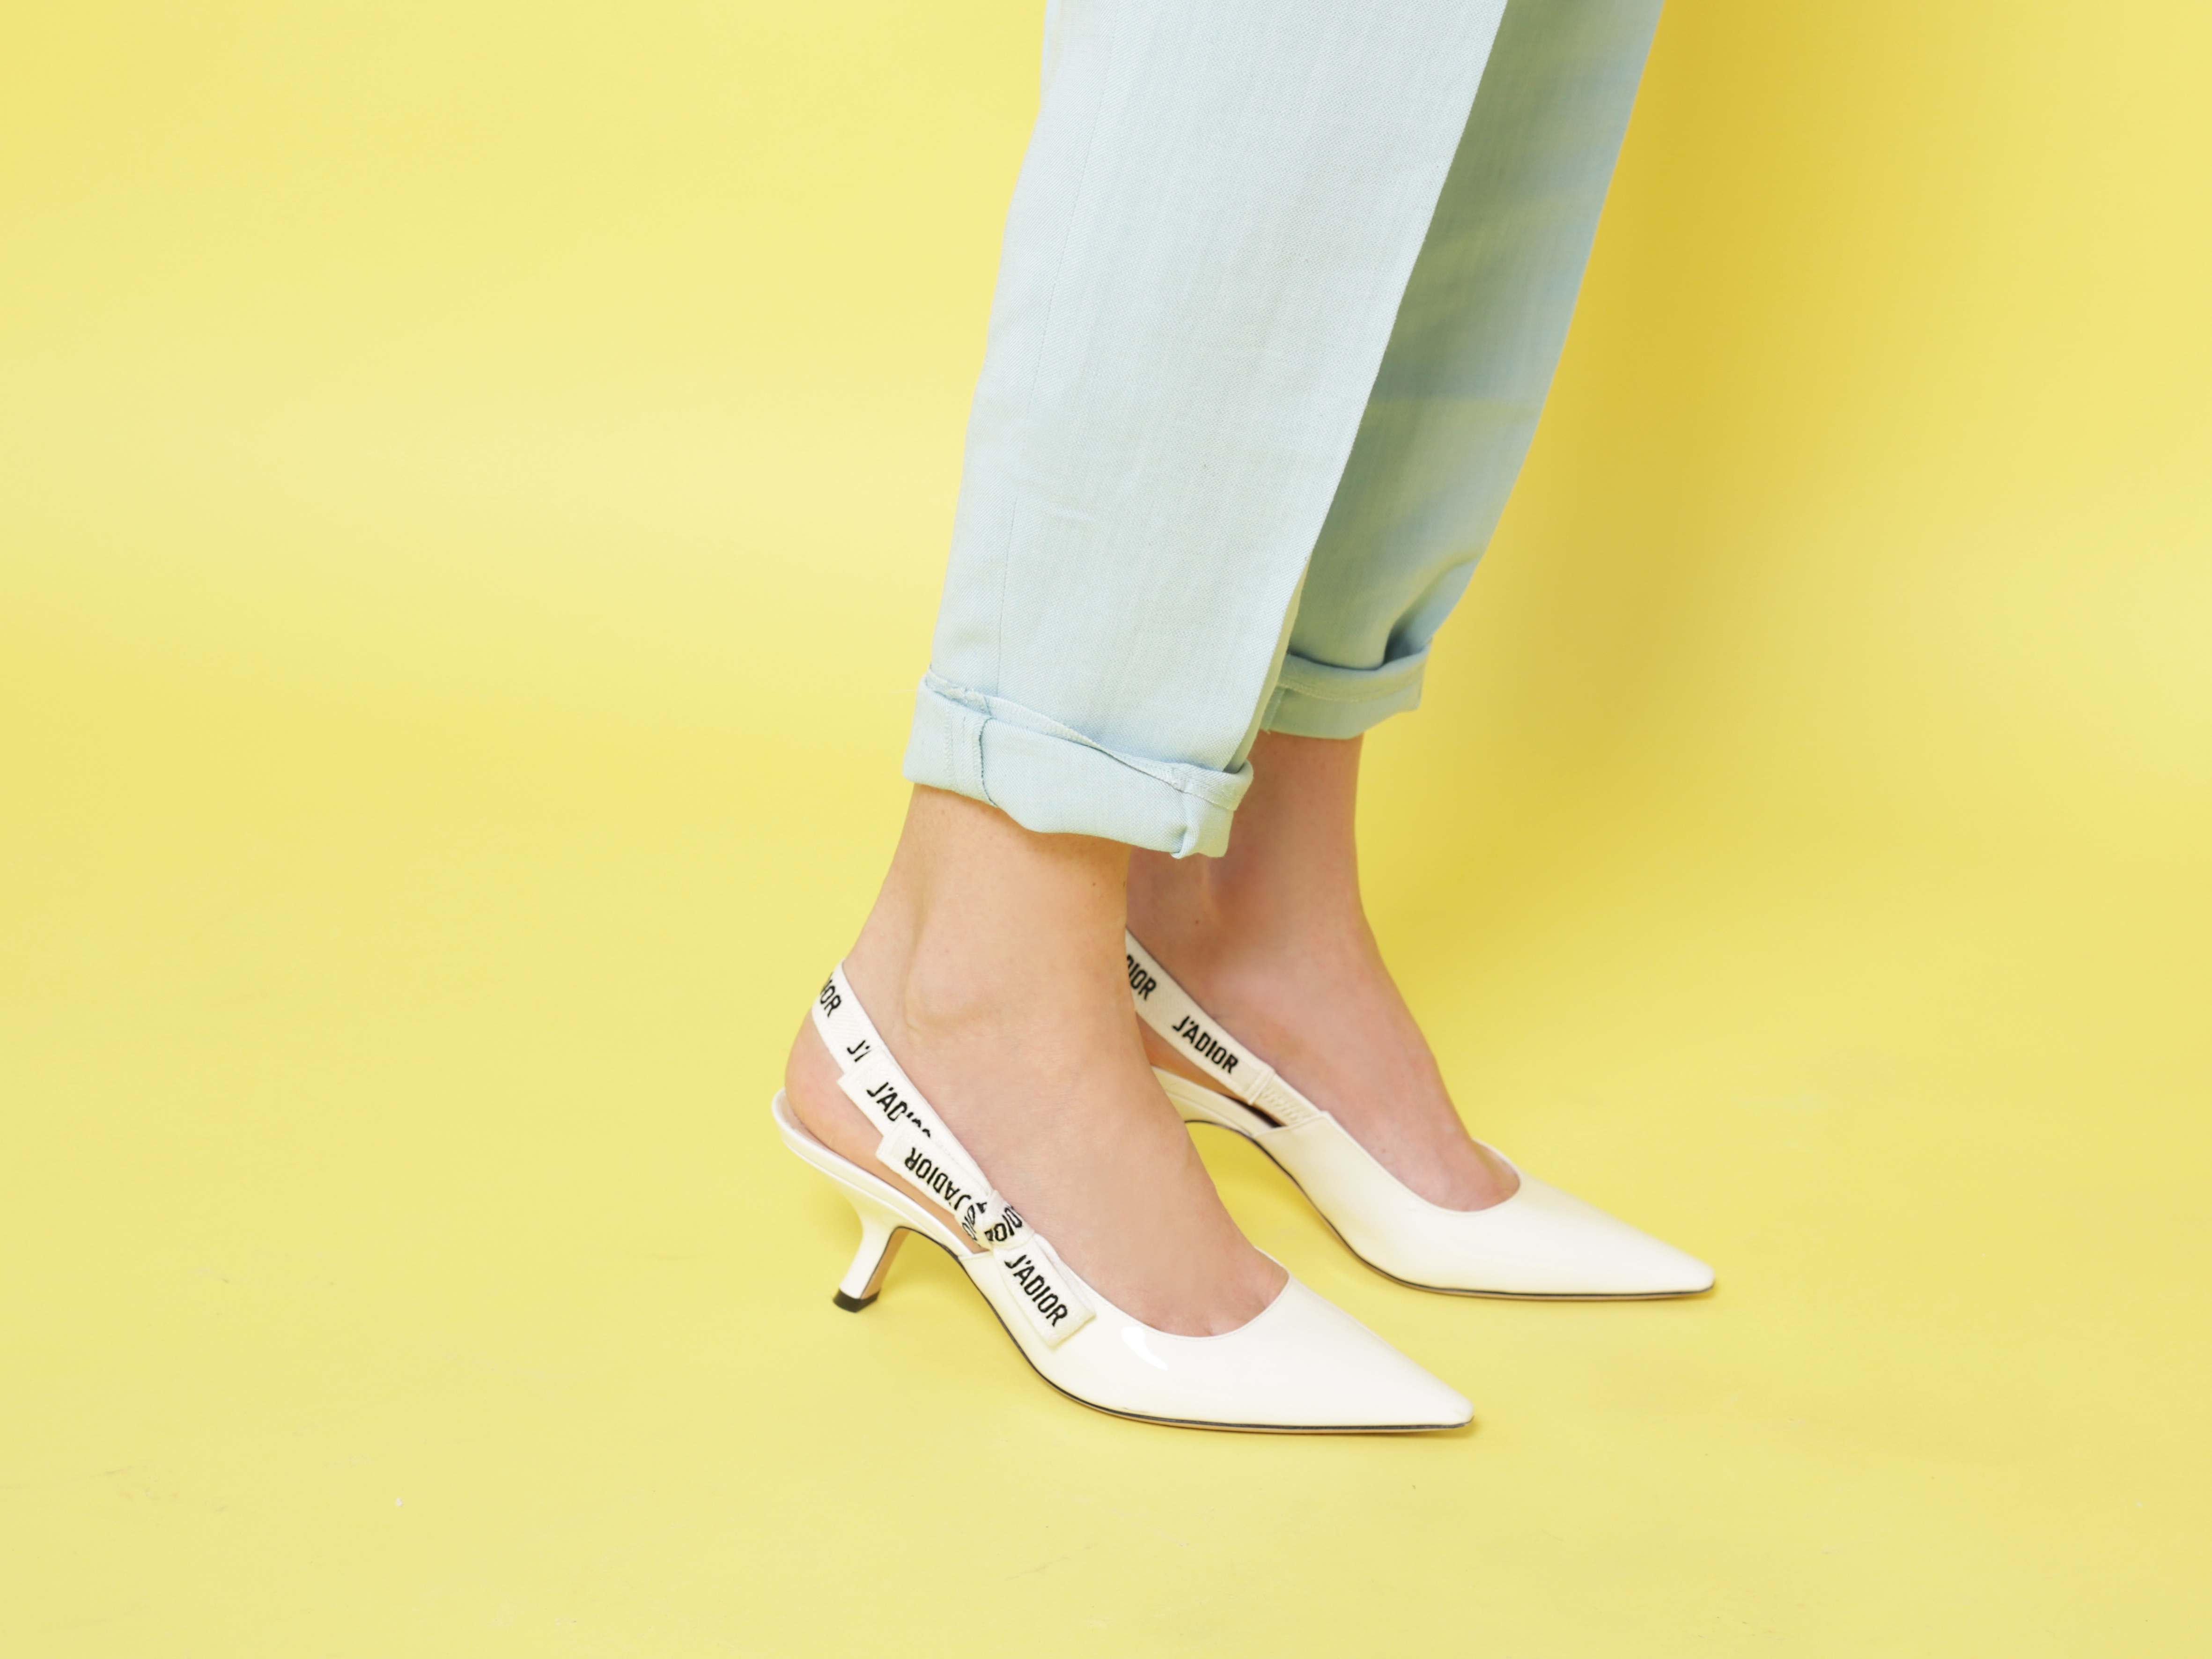 dior heels white